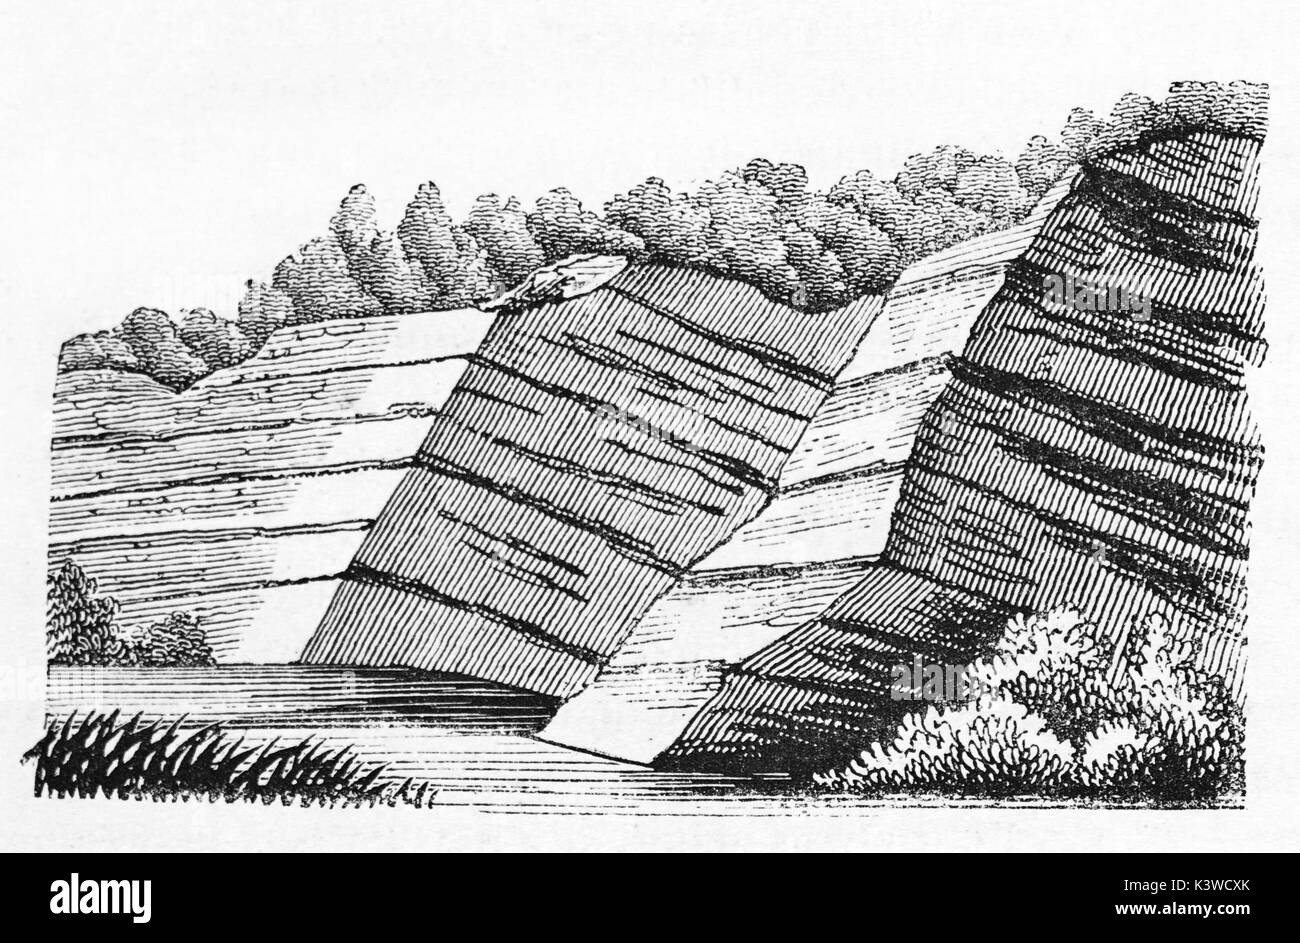 Vecchia illustrazione geologica di strati livellata scarpata. Da autore non identificato, pubblicato il Magasin pittoresco, Parigi, 1841 Foto Stock